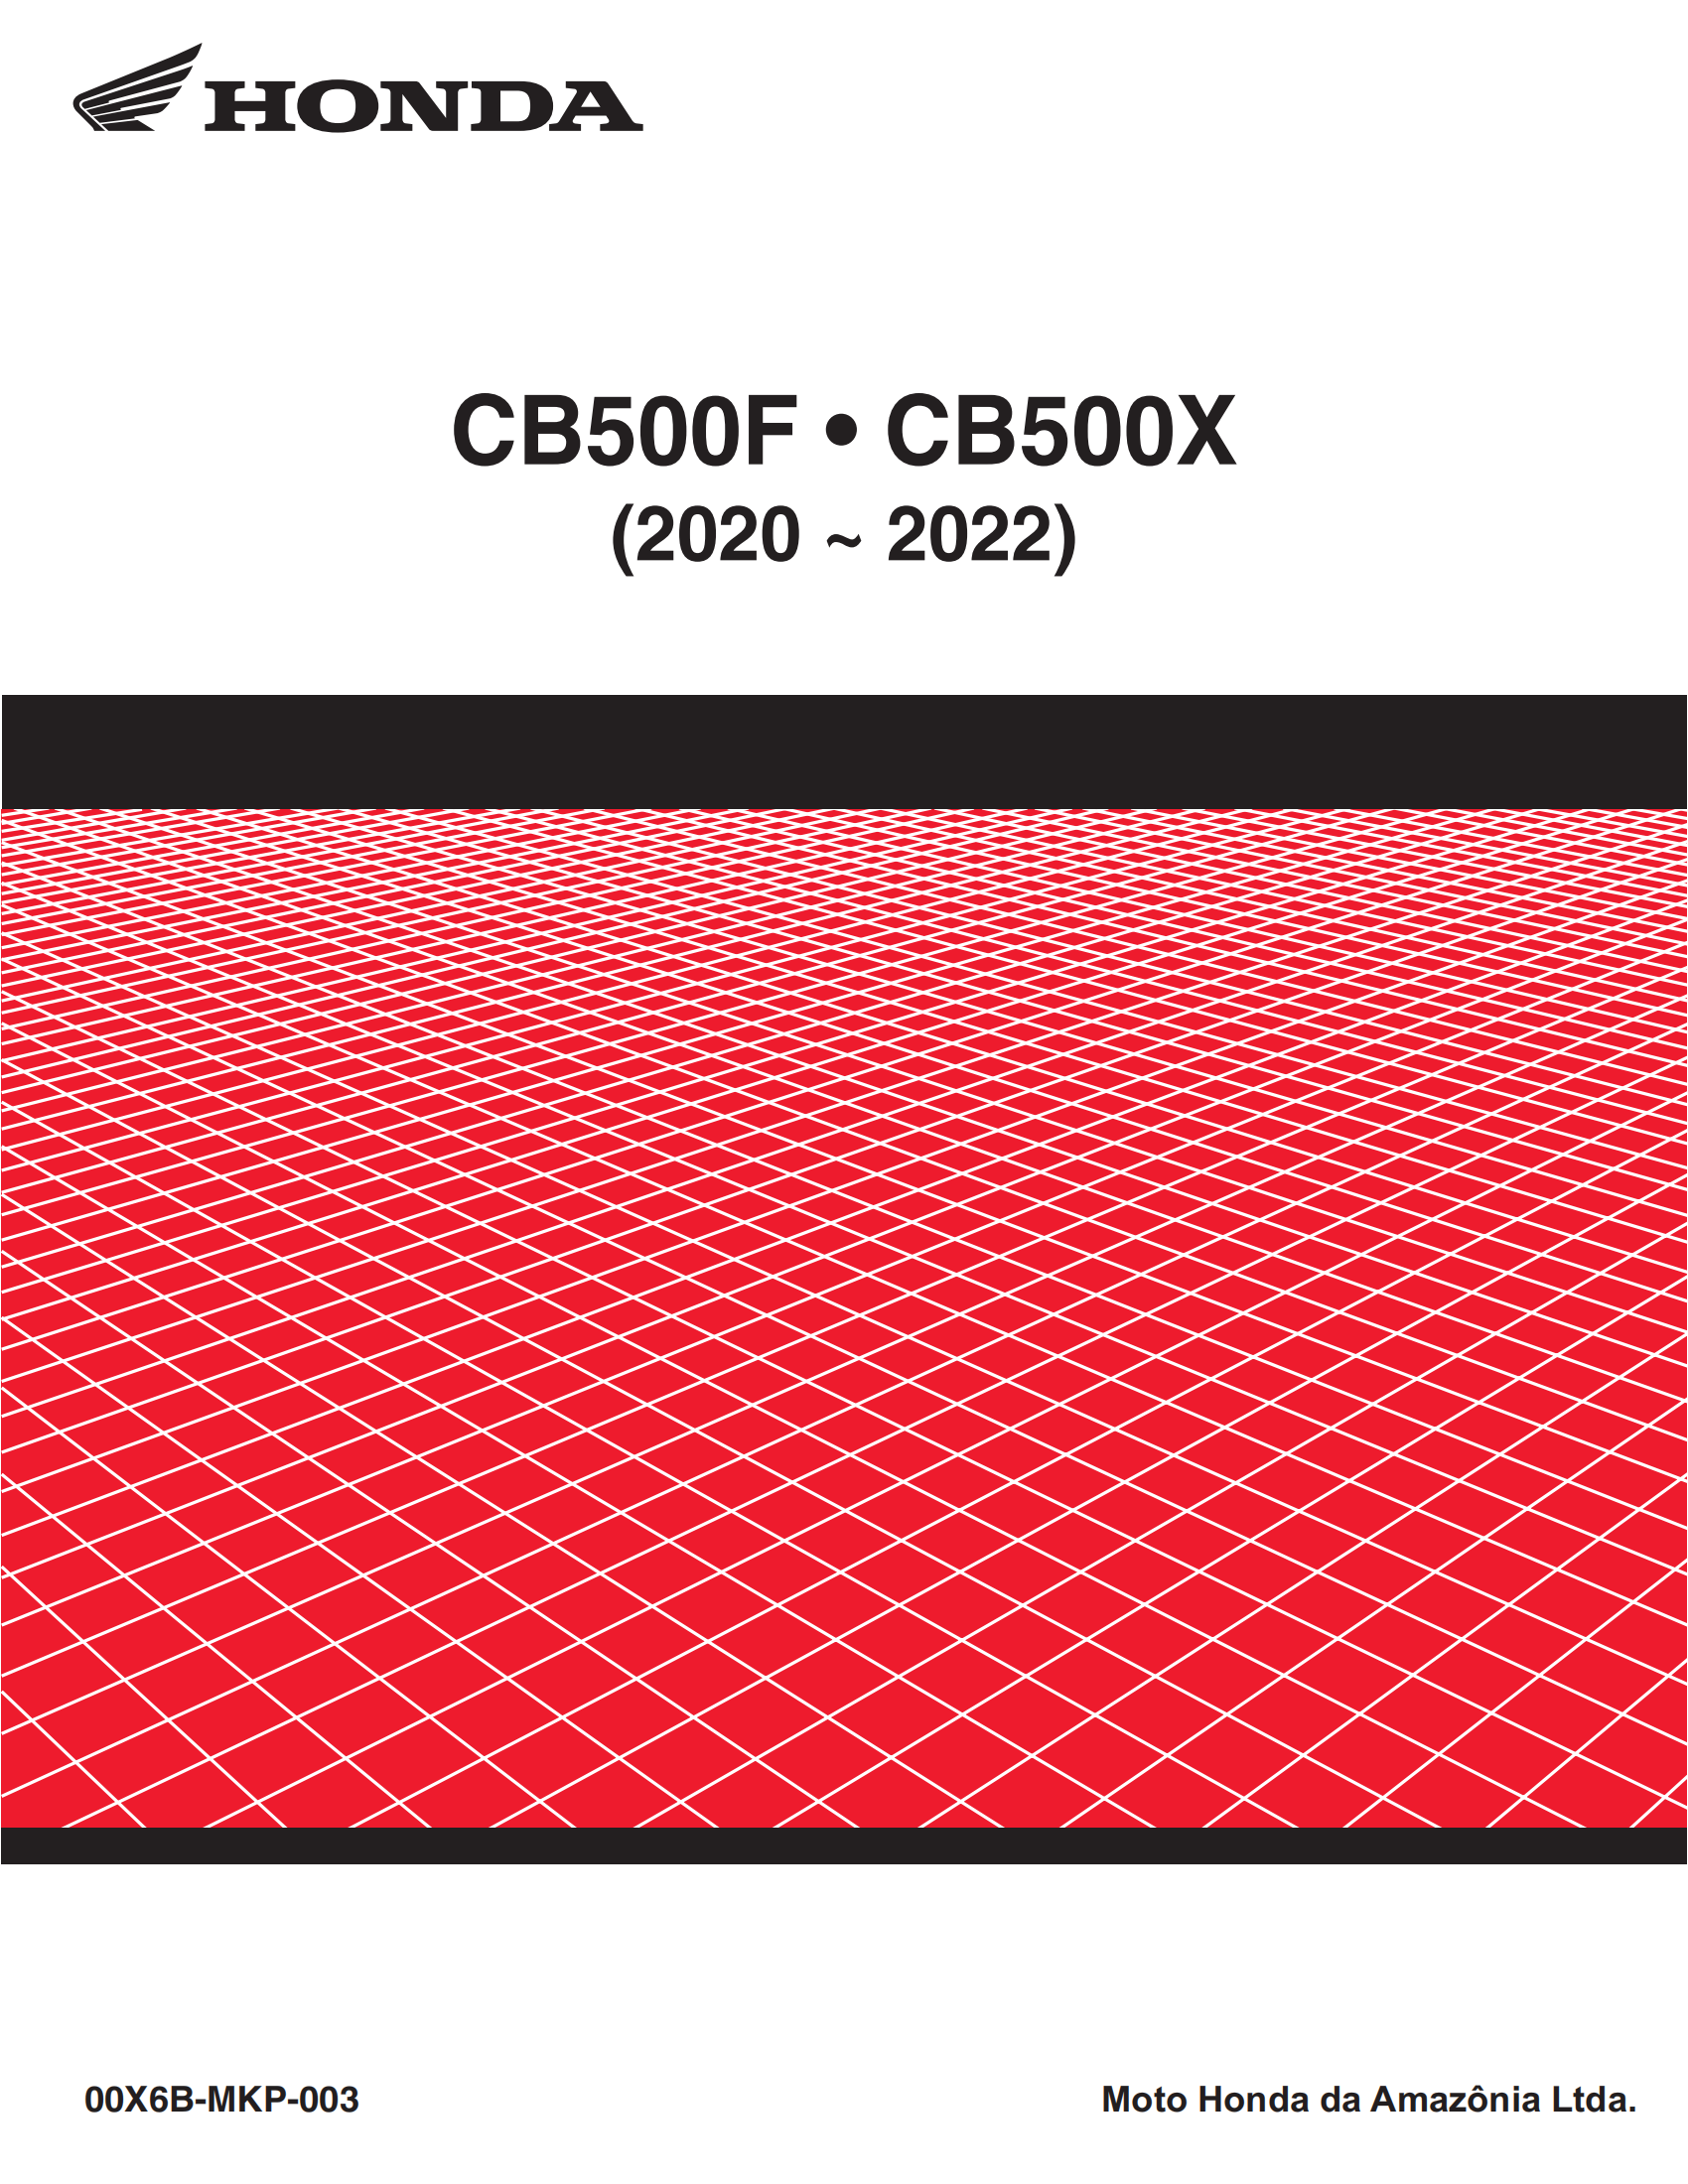 原版葡萄牙文2020-2022年本田cb500f维修手册cb500x维修手册插图